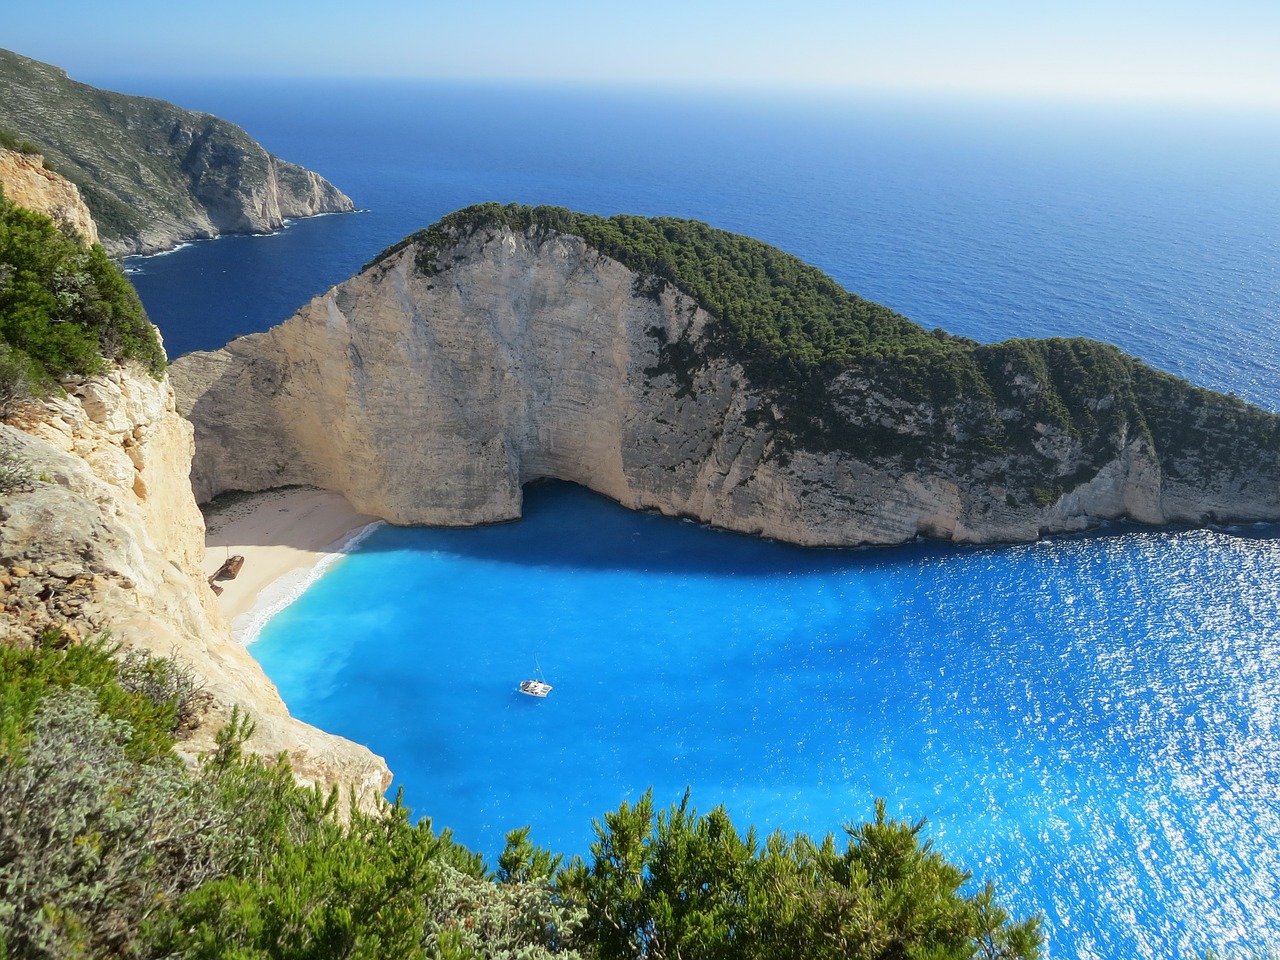 Biuro podróży Adriatyk. Jak znaleźć idealne miejsce na wakacje?